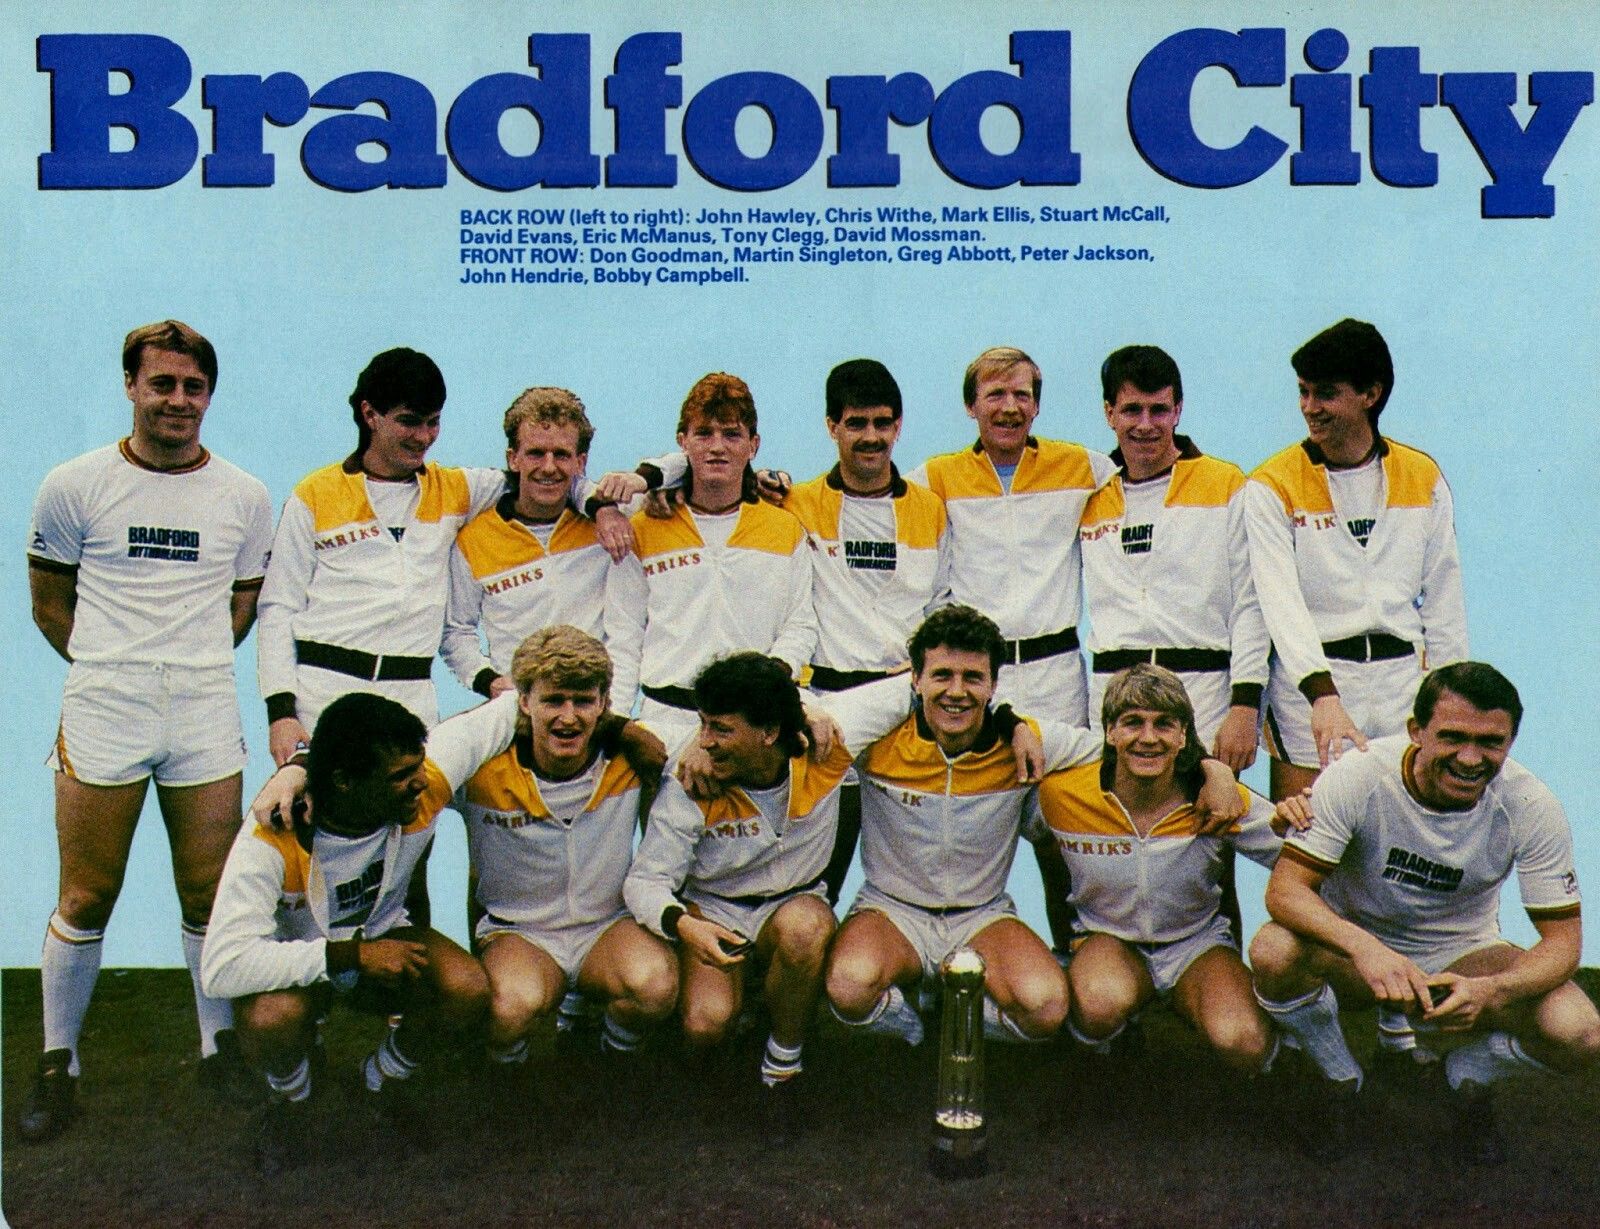 Η 11η Μαΐου του 1985 θα ήταν μία μεγάλη γιορτή για το Μπράντφορντ. Κατέληξε σε μία από τις τραγωδίες στην ιστορία του παγκοσμίου ποδοσφαίρου. 